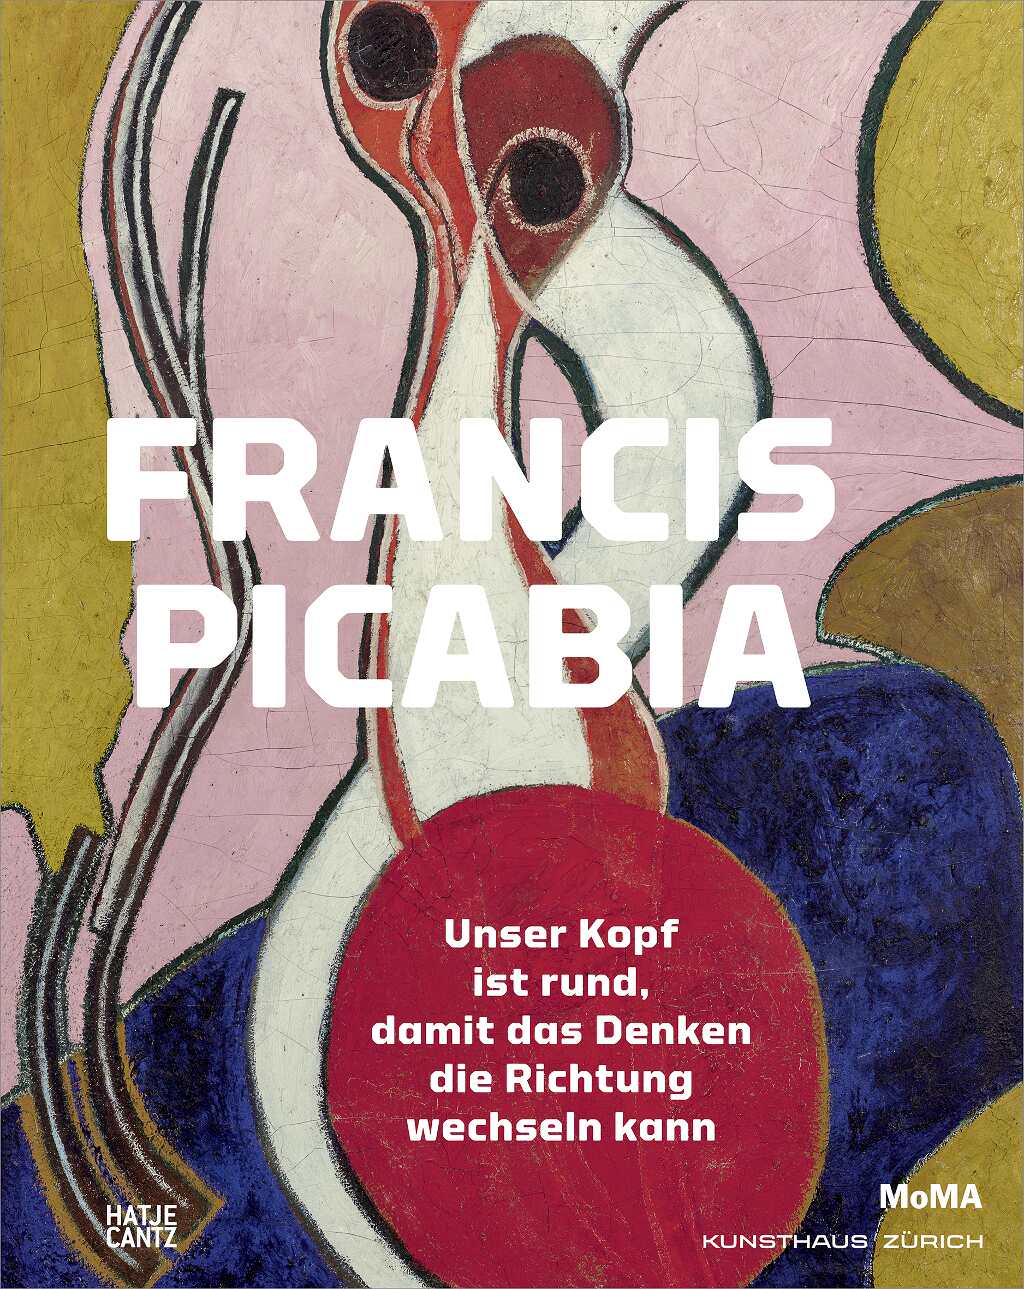 Francis Picabia: Unser Kopf ist rund, damit das Denken die Richtung wechseln kann (Hatje Cantz)